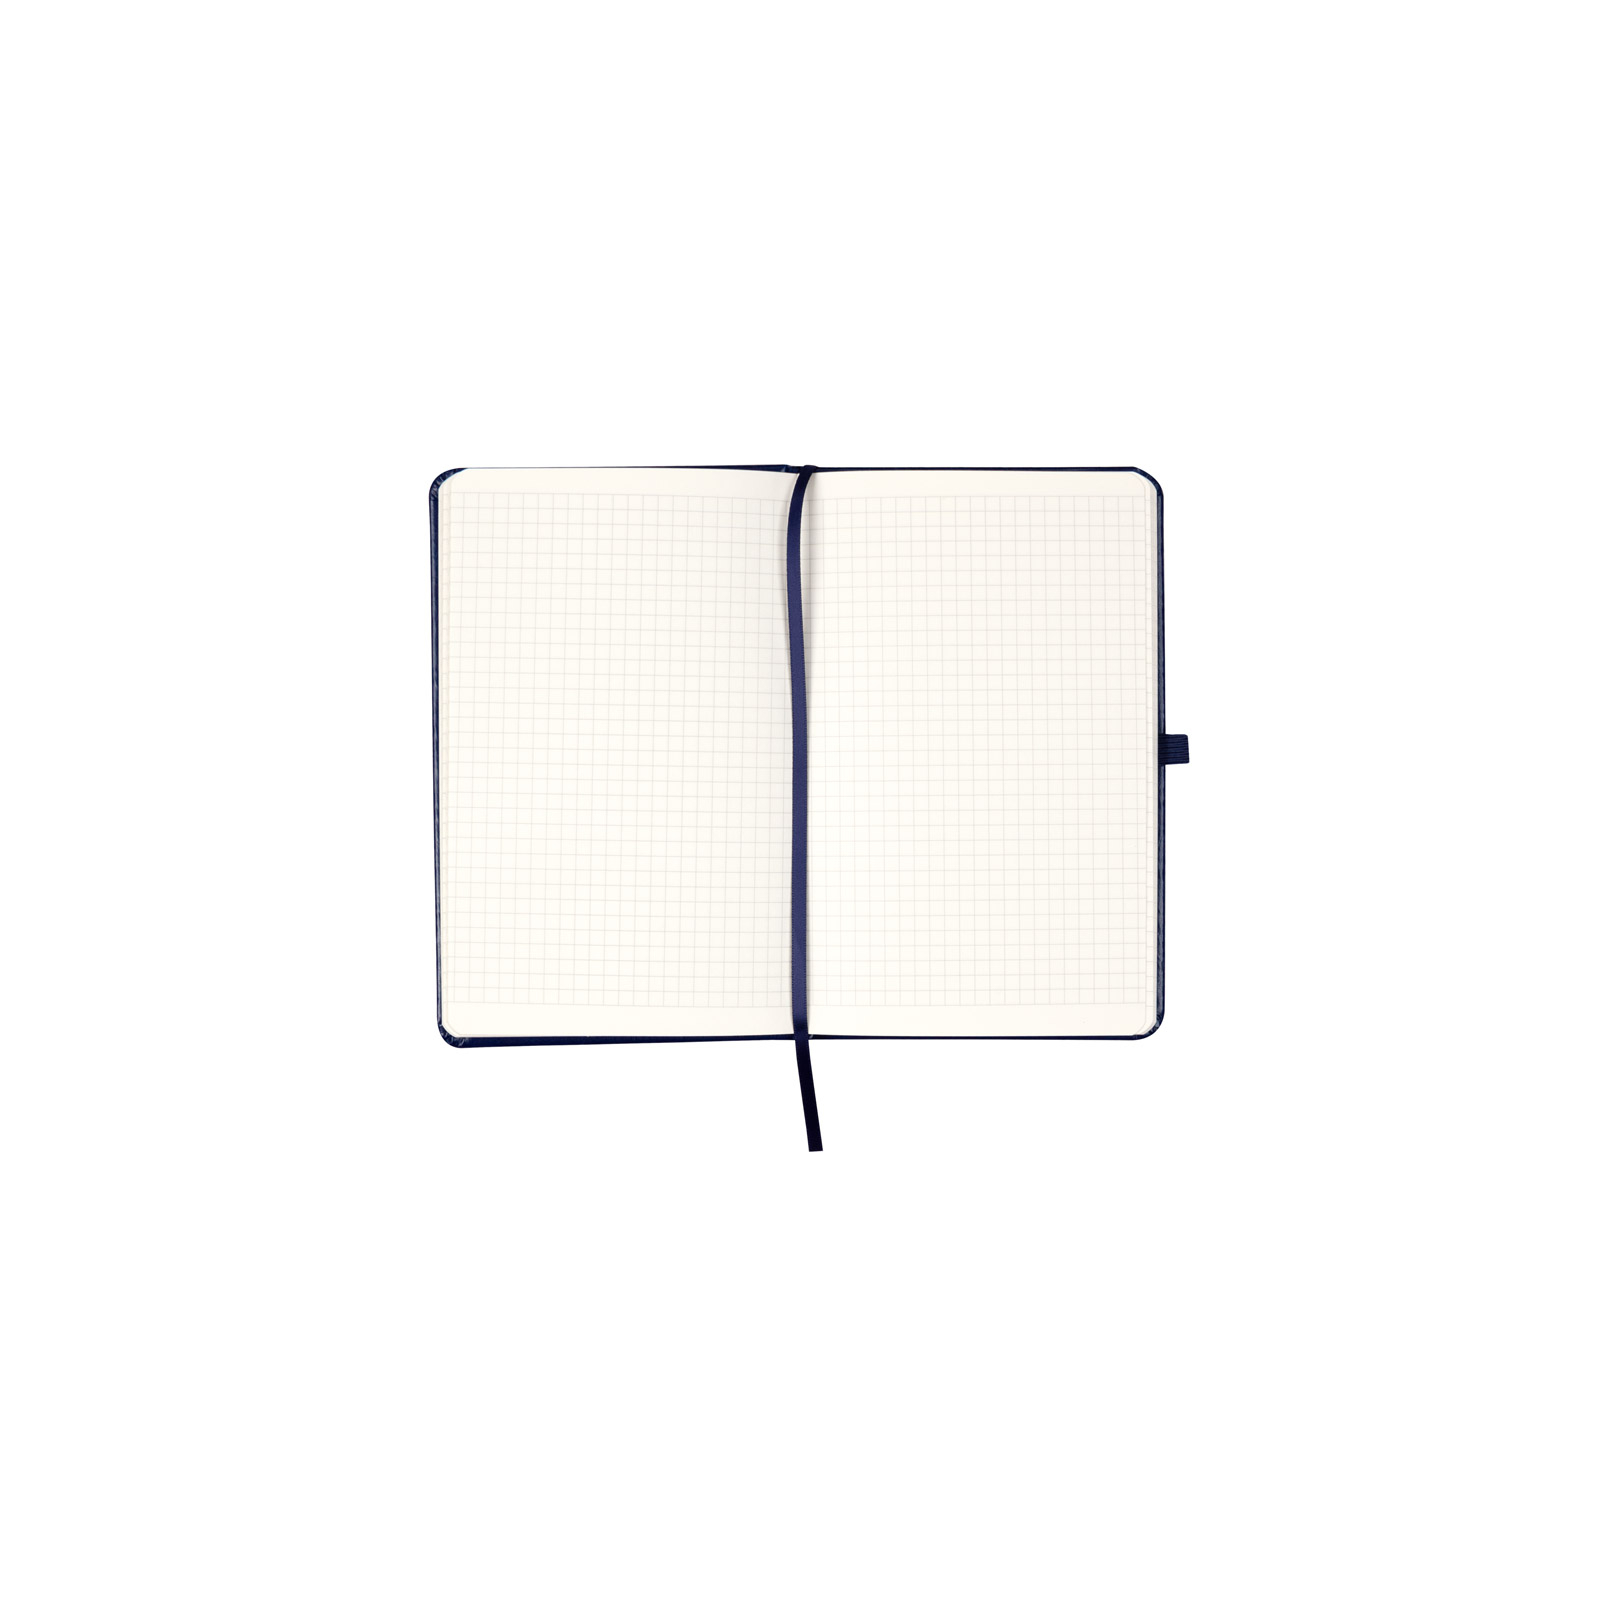 Книга записная Axent Partner Lux, 125x195 мм, 96 листов, клетка, твердая обложка, синяя (8202-02-A) изображение 4